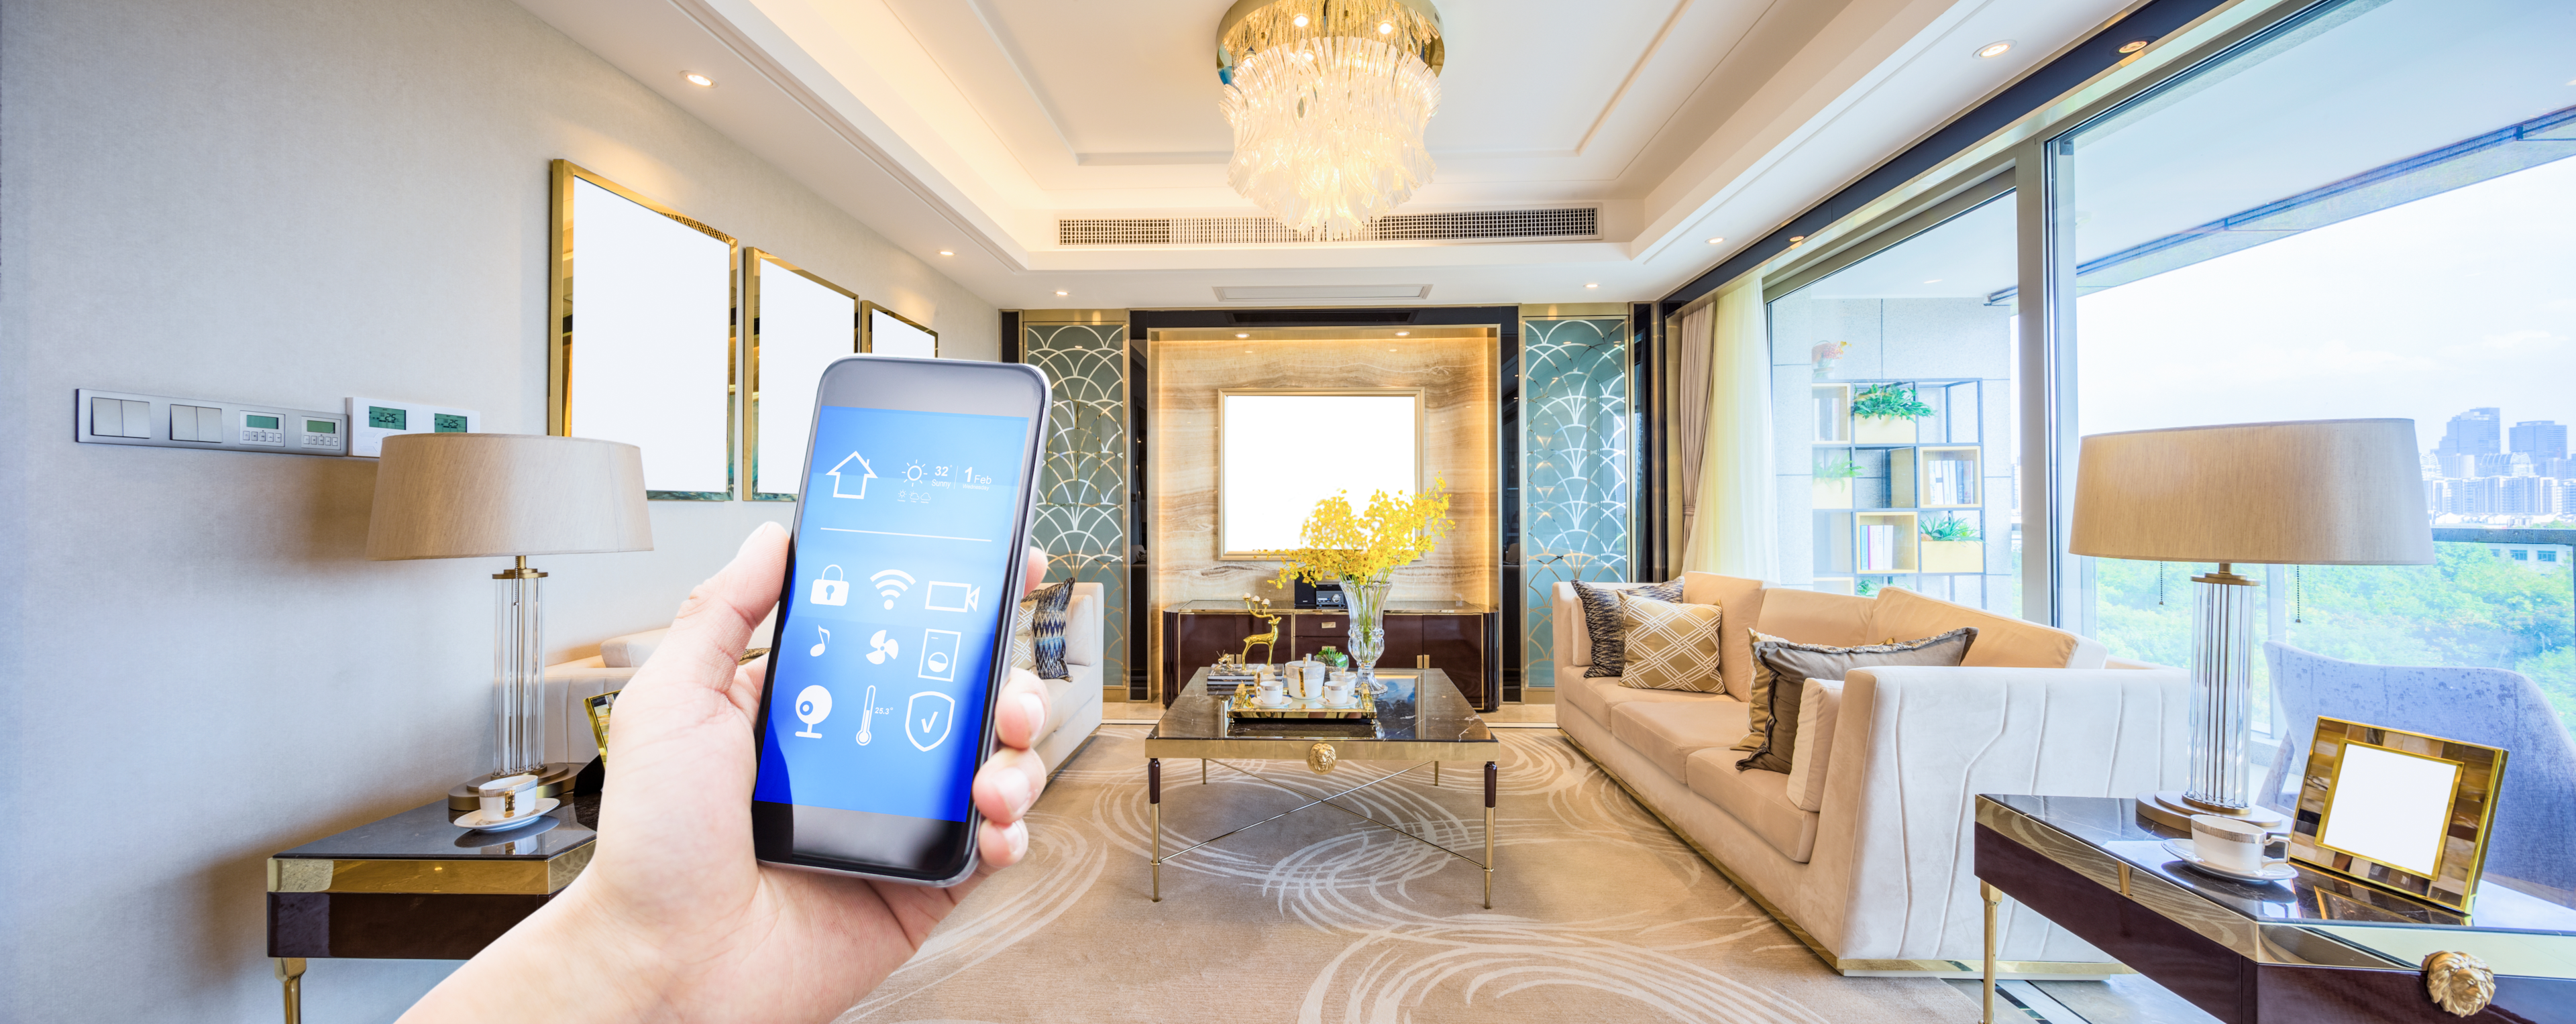 Domoticasysteem kan je eenvoudig je woning instellen en optimaliseren via je smartphone